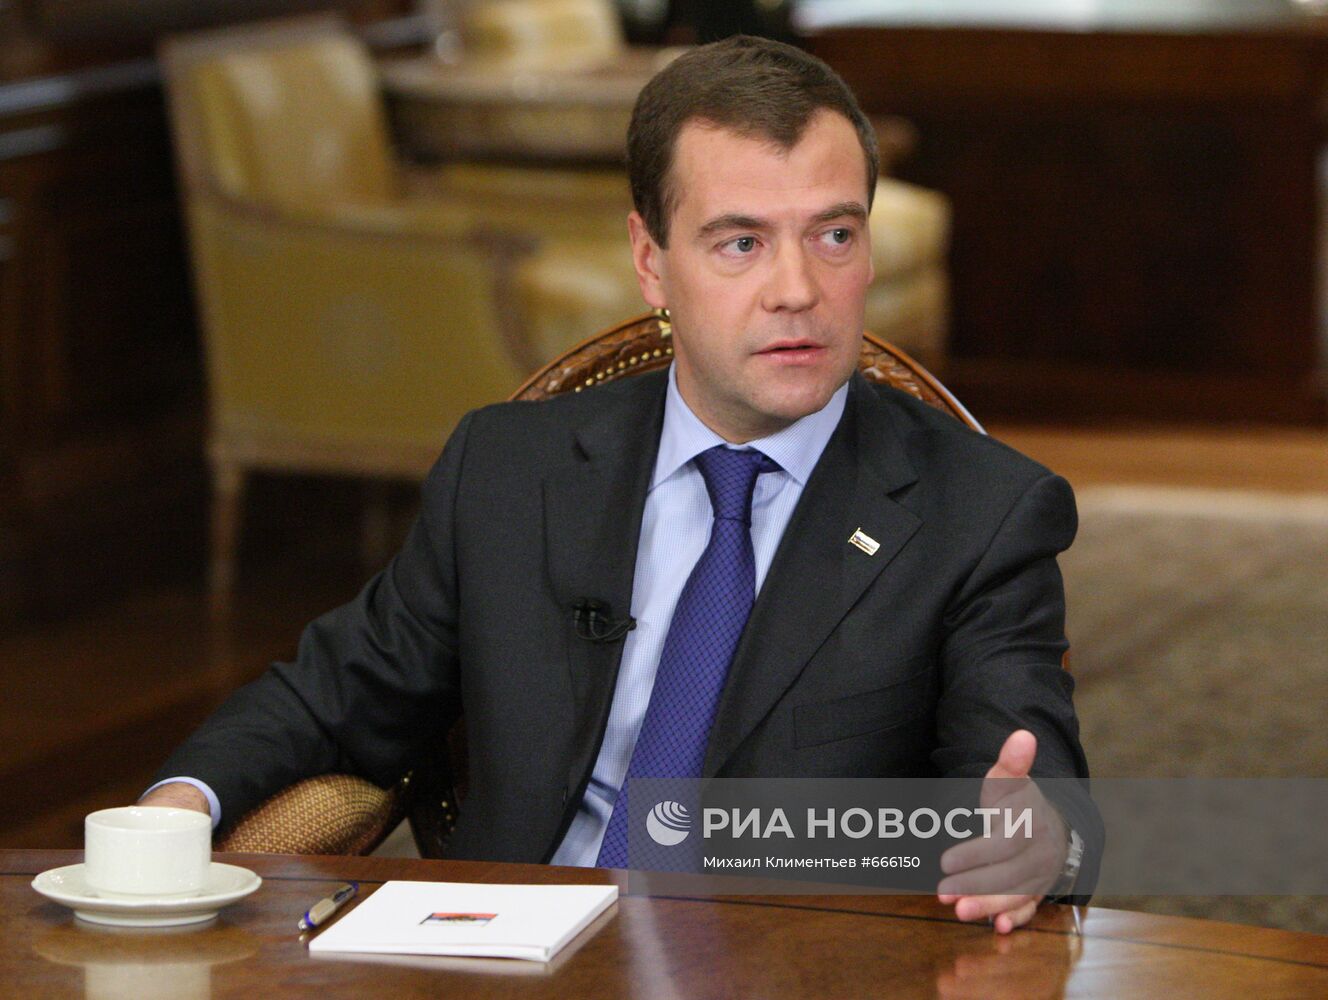 Д.Медведев дал интервью представителям украинских СМИ